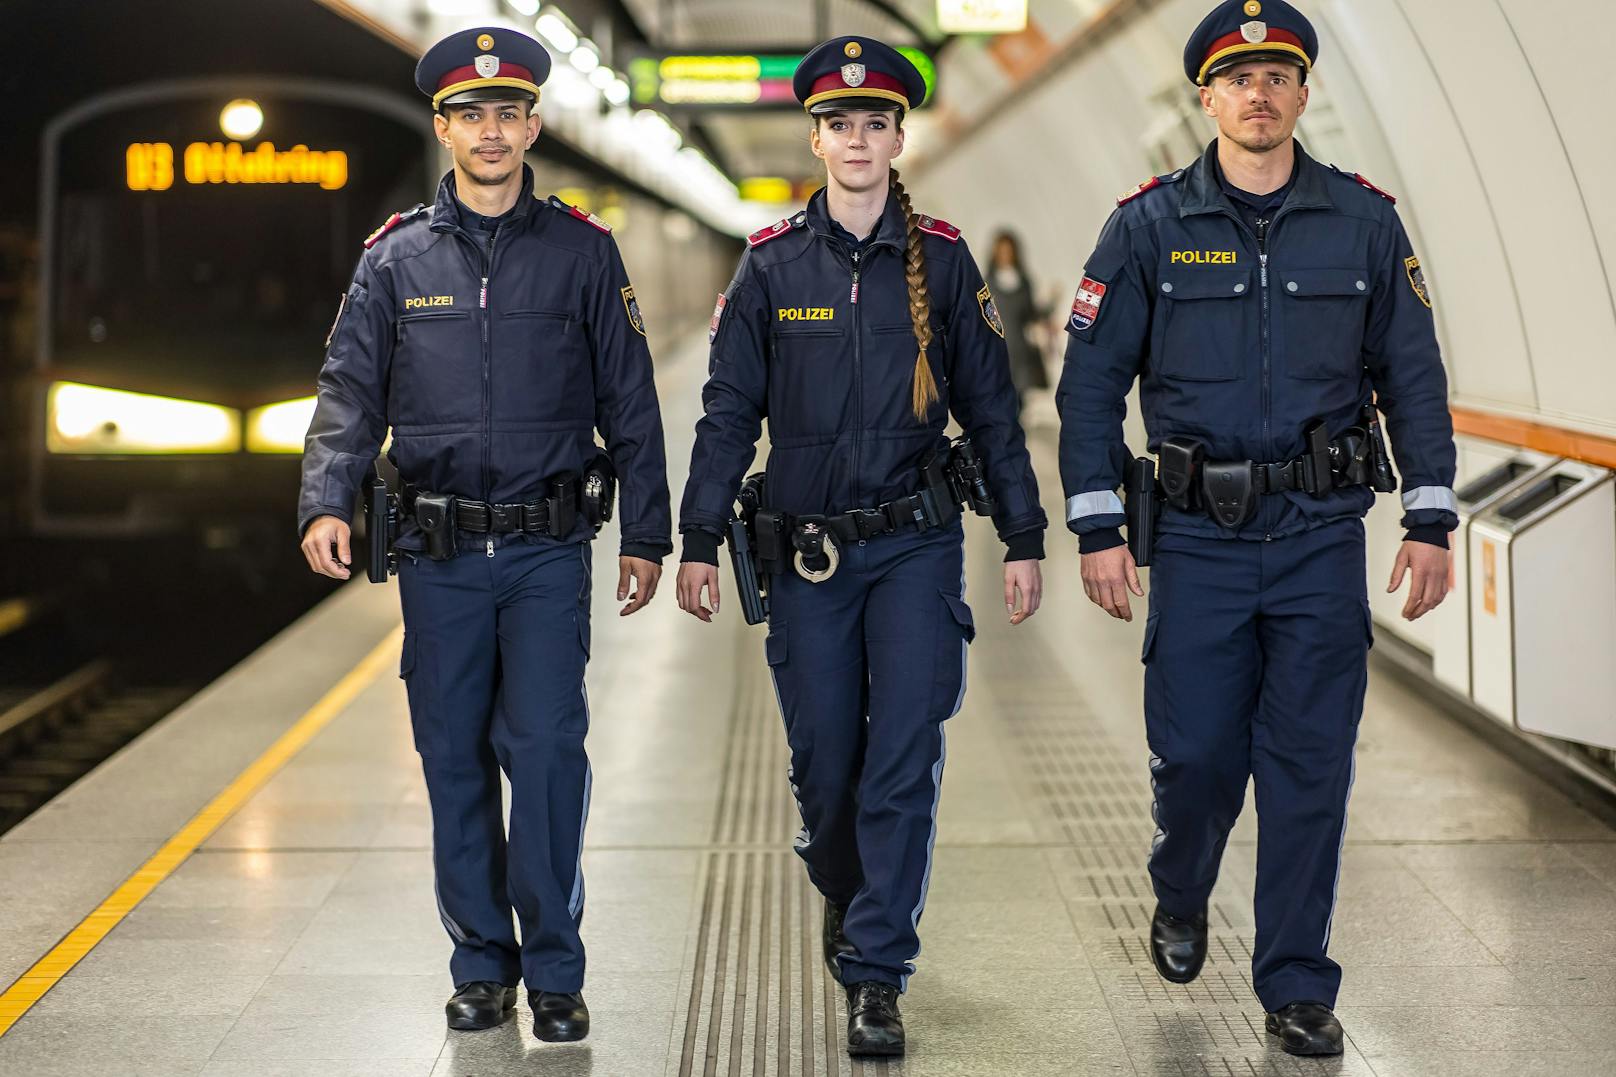 Für die Polizistin Martina ist die Gleichstellung zwischen Frau und Mann, vor allem, was das Gehalt betrifft, einer der großen Vorteile des Polizeiberufs.